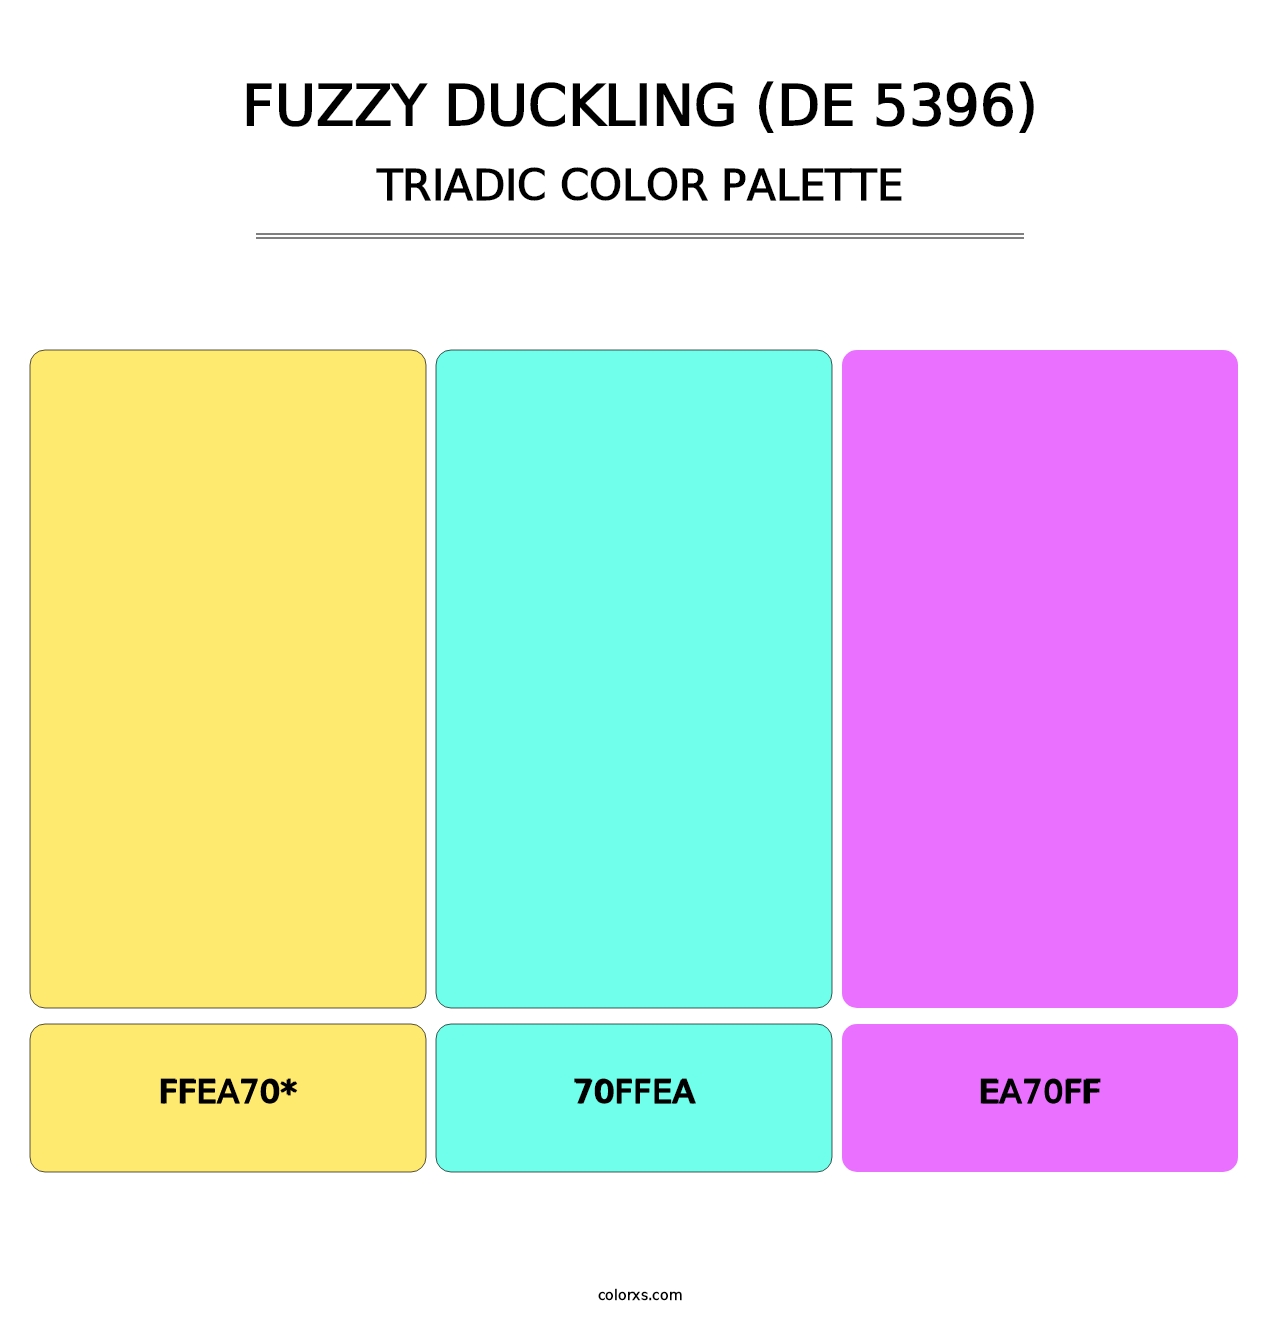 Fuzzy Duckling (DE 5396) - Triadic Color Palette